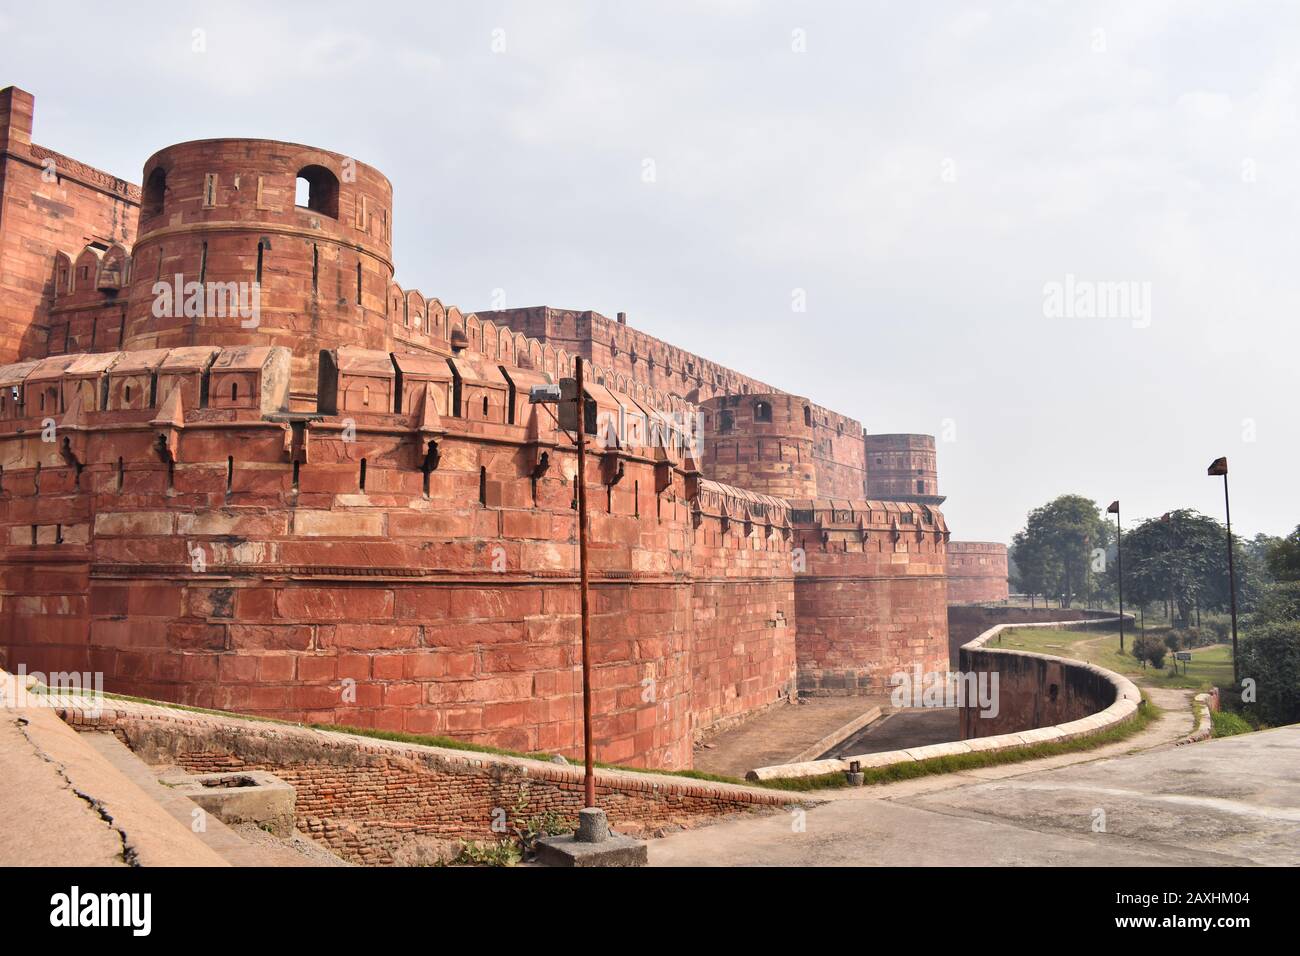 Seitenansicht von Agra Fort, Festung aus rotem Sandstein aus dem 16. Jahrhundert am Fluss Yamuna, Agra, Uttar Pradesh, Indien Stockfoto